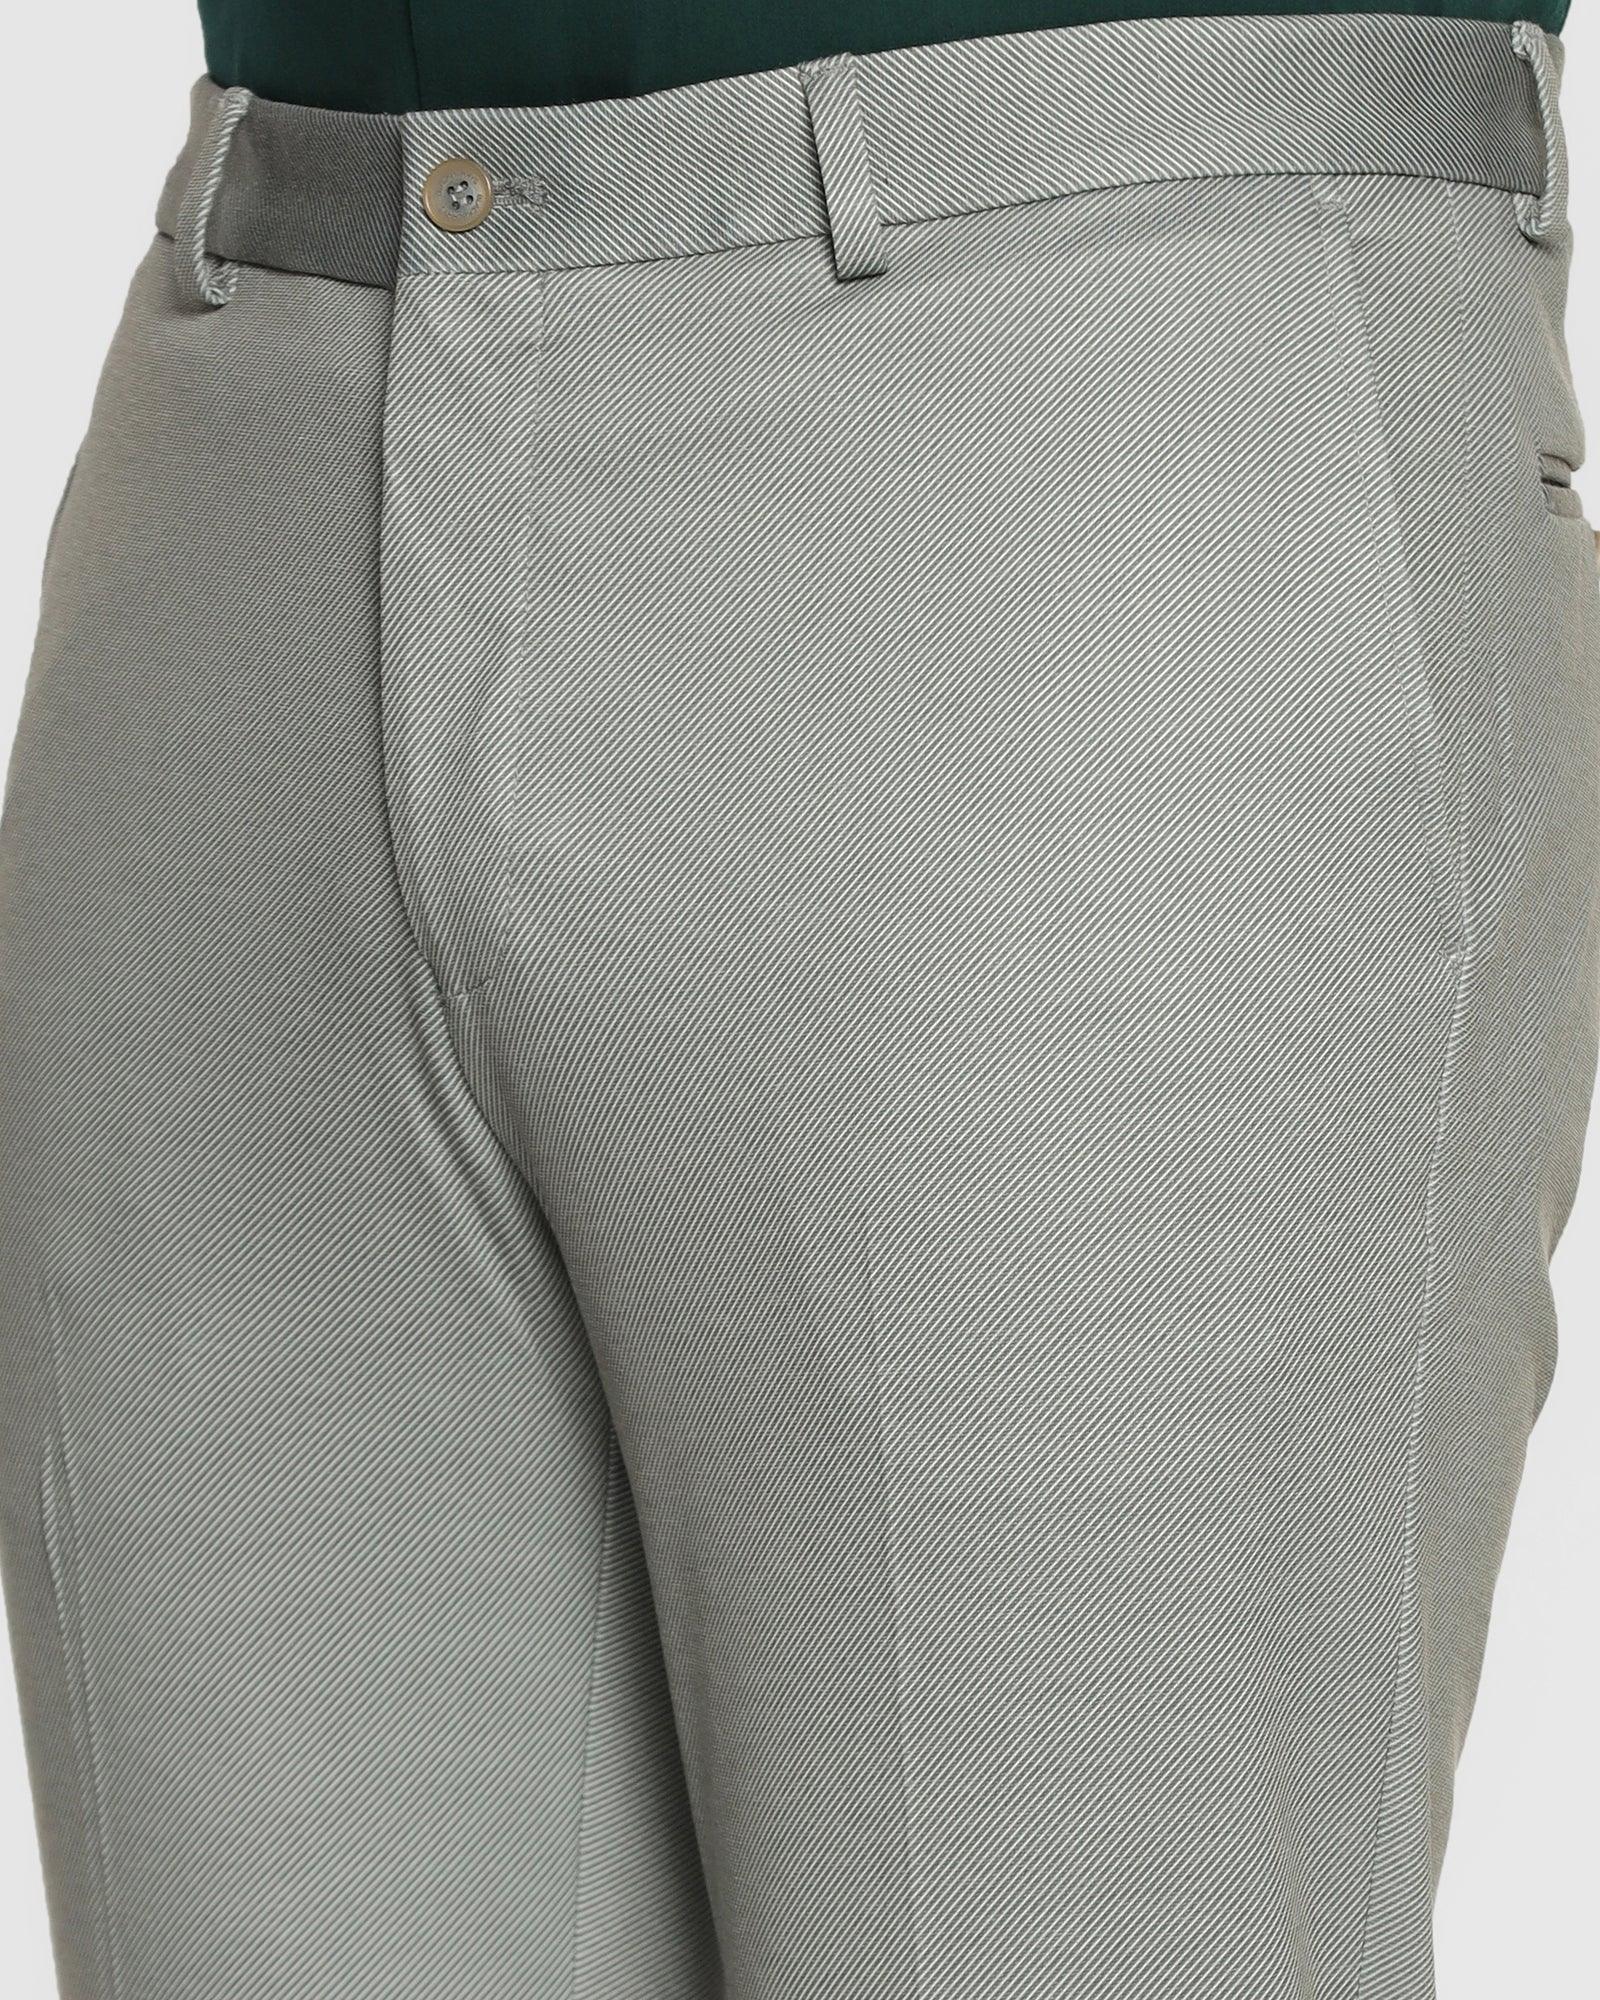 Slim Fit B-91 Formal Olive Textured Trouser - Stret